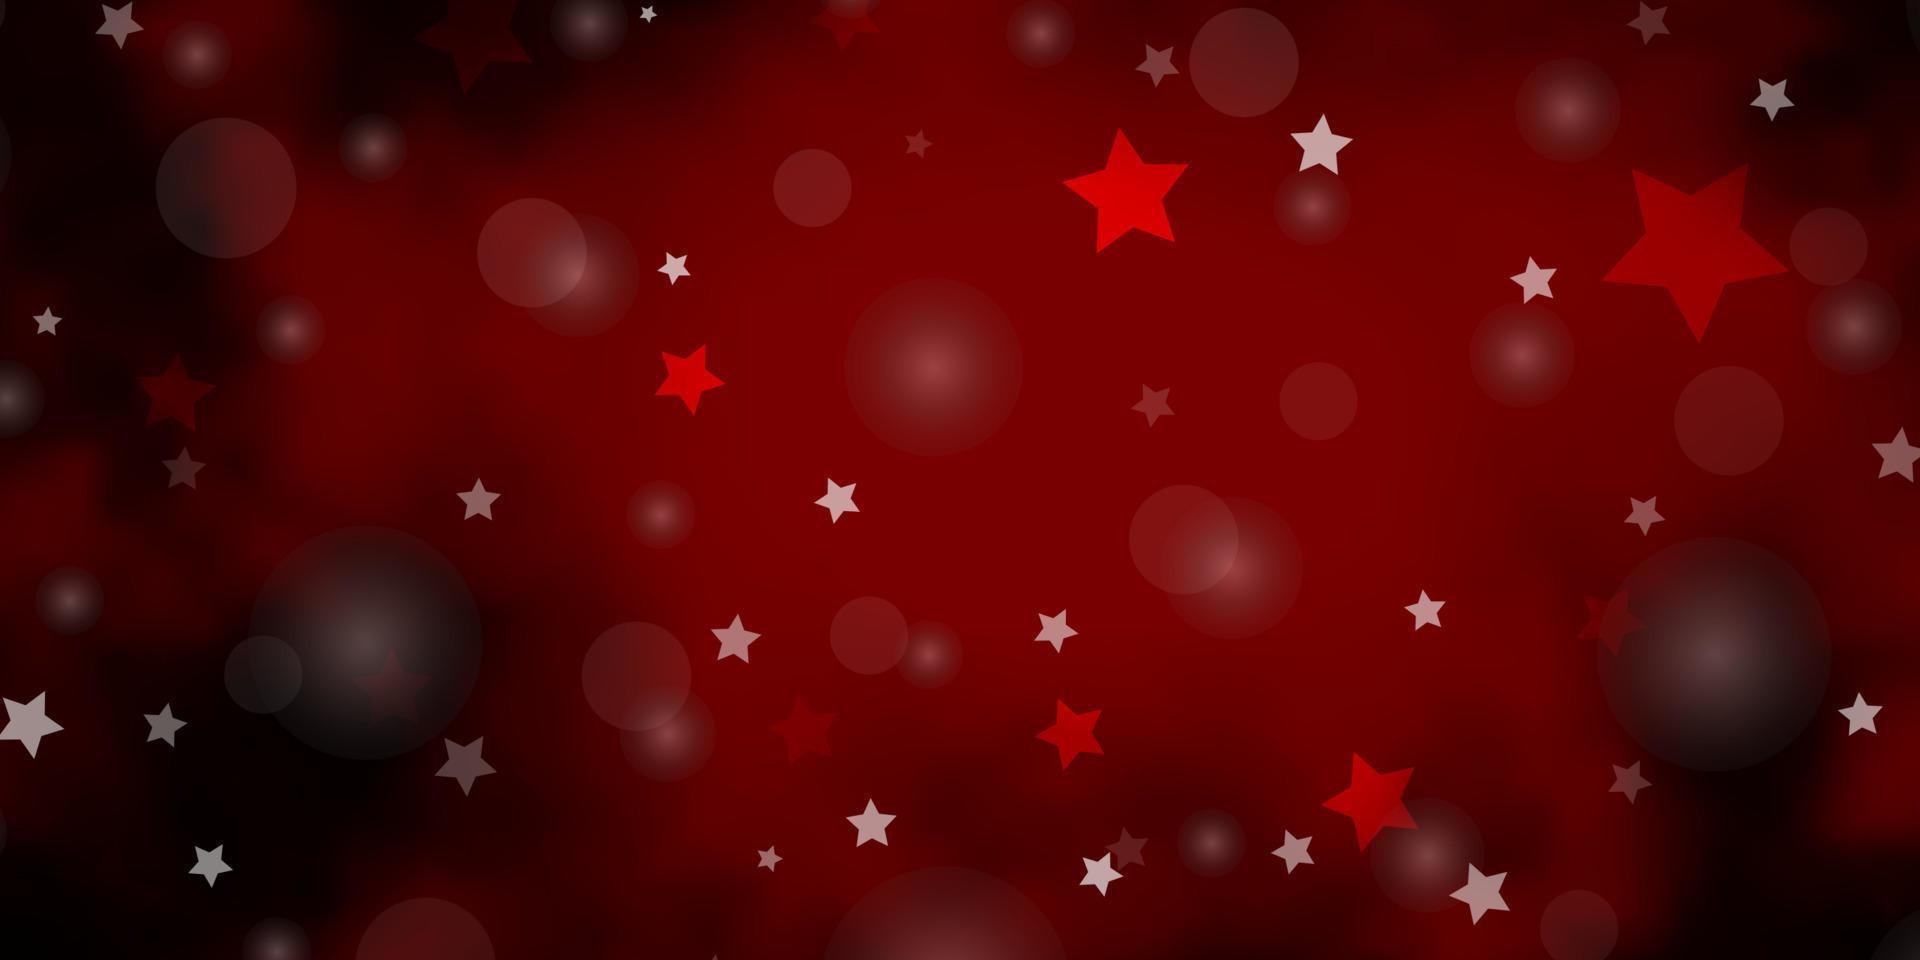 diseño de vector rojo oscuro con círculos, estrellas.